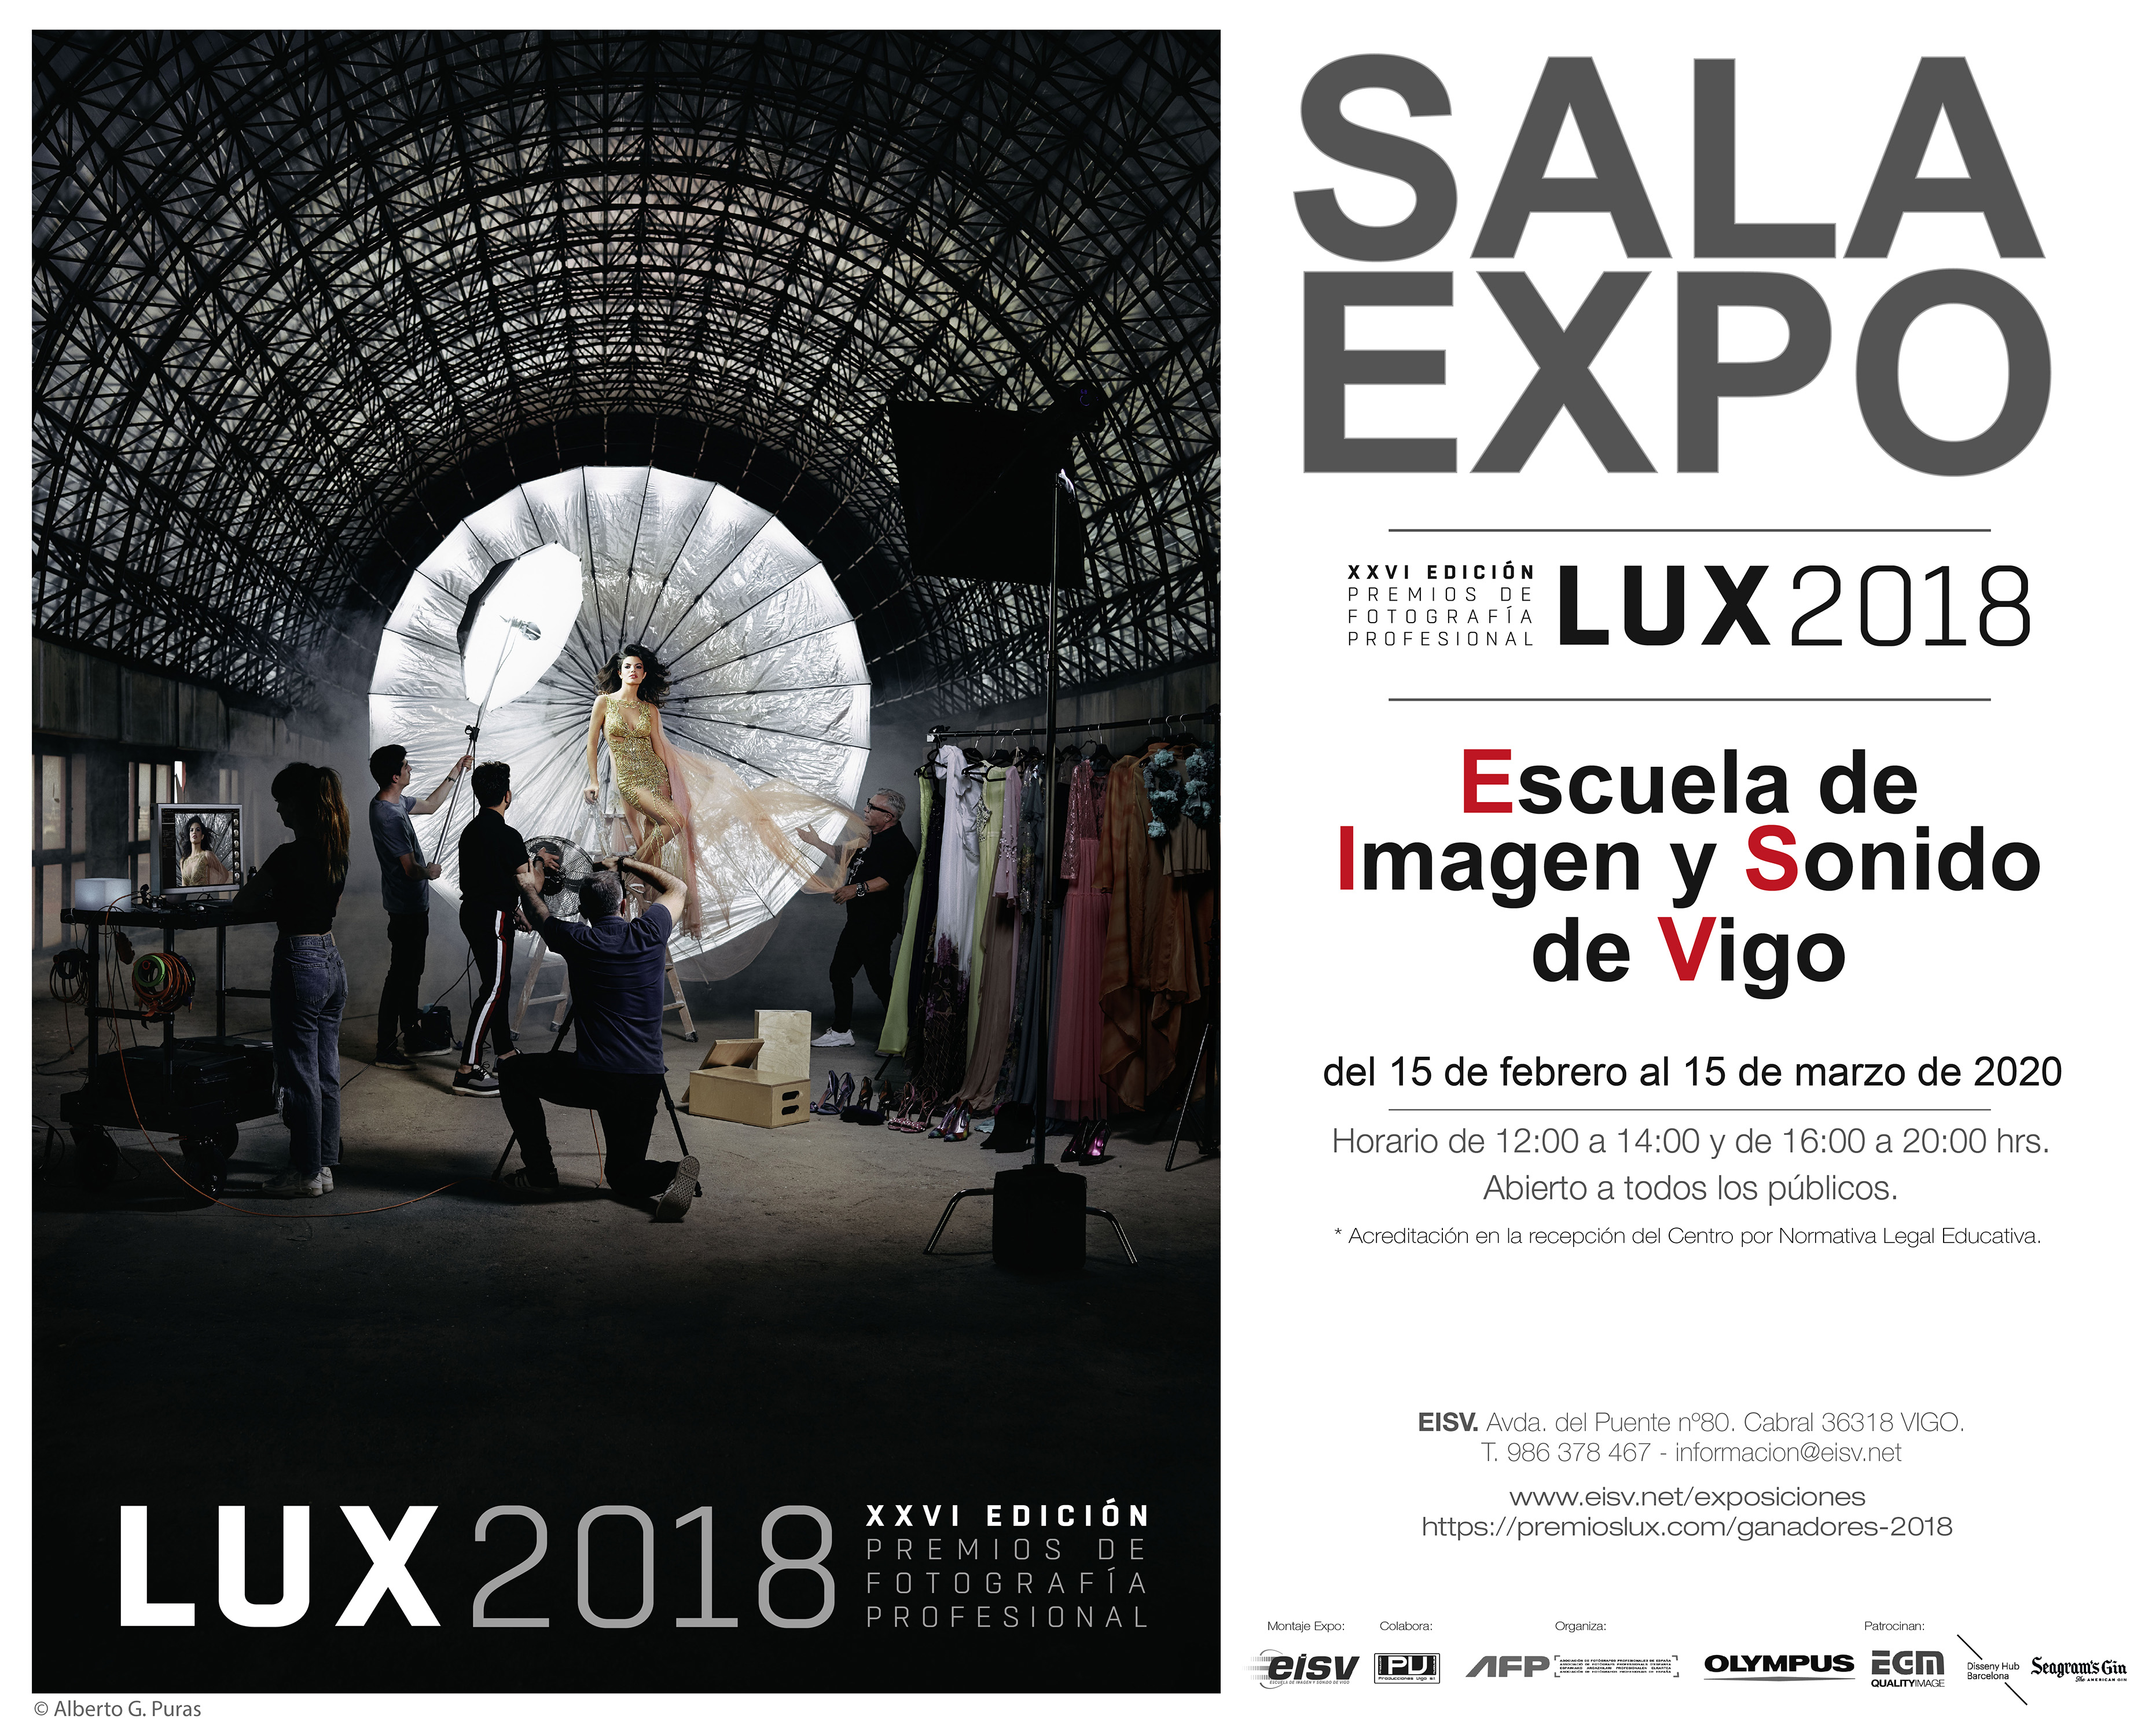 XXVI Edición Premios de Fotografía Profesional LUX